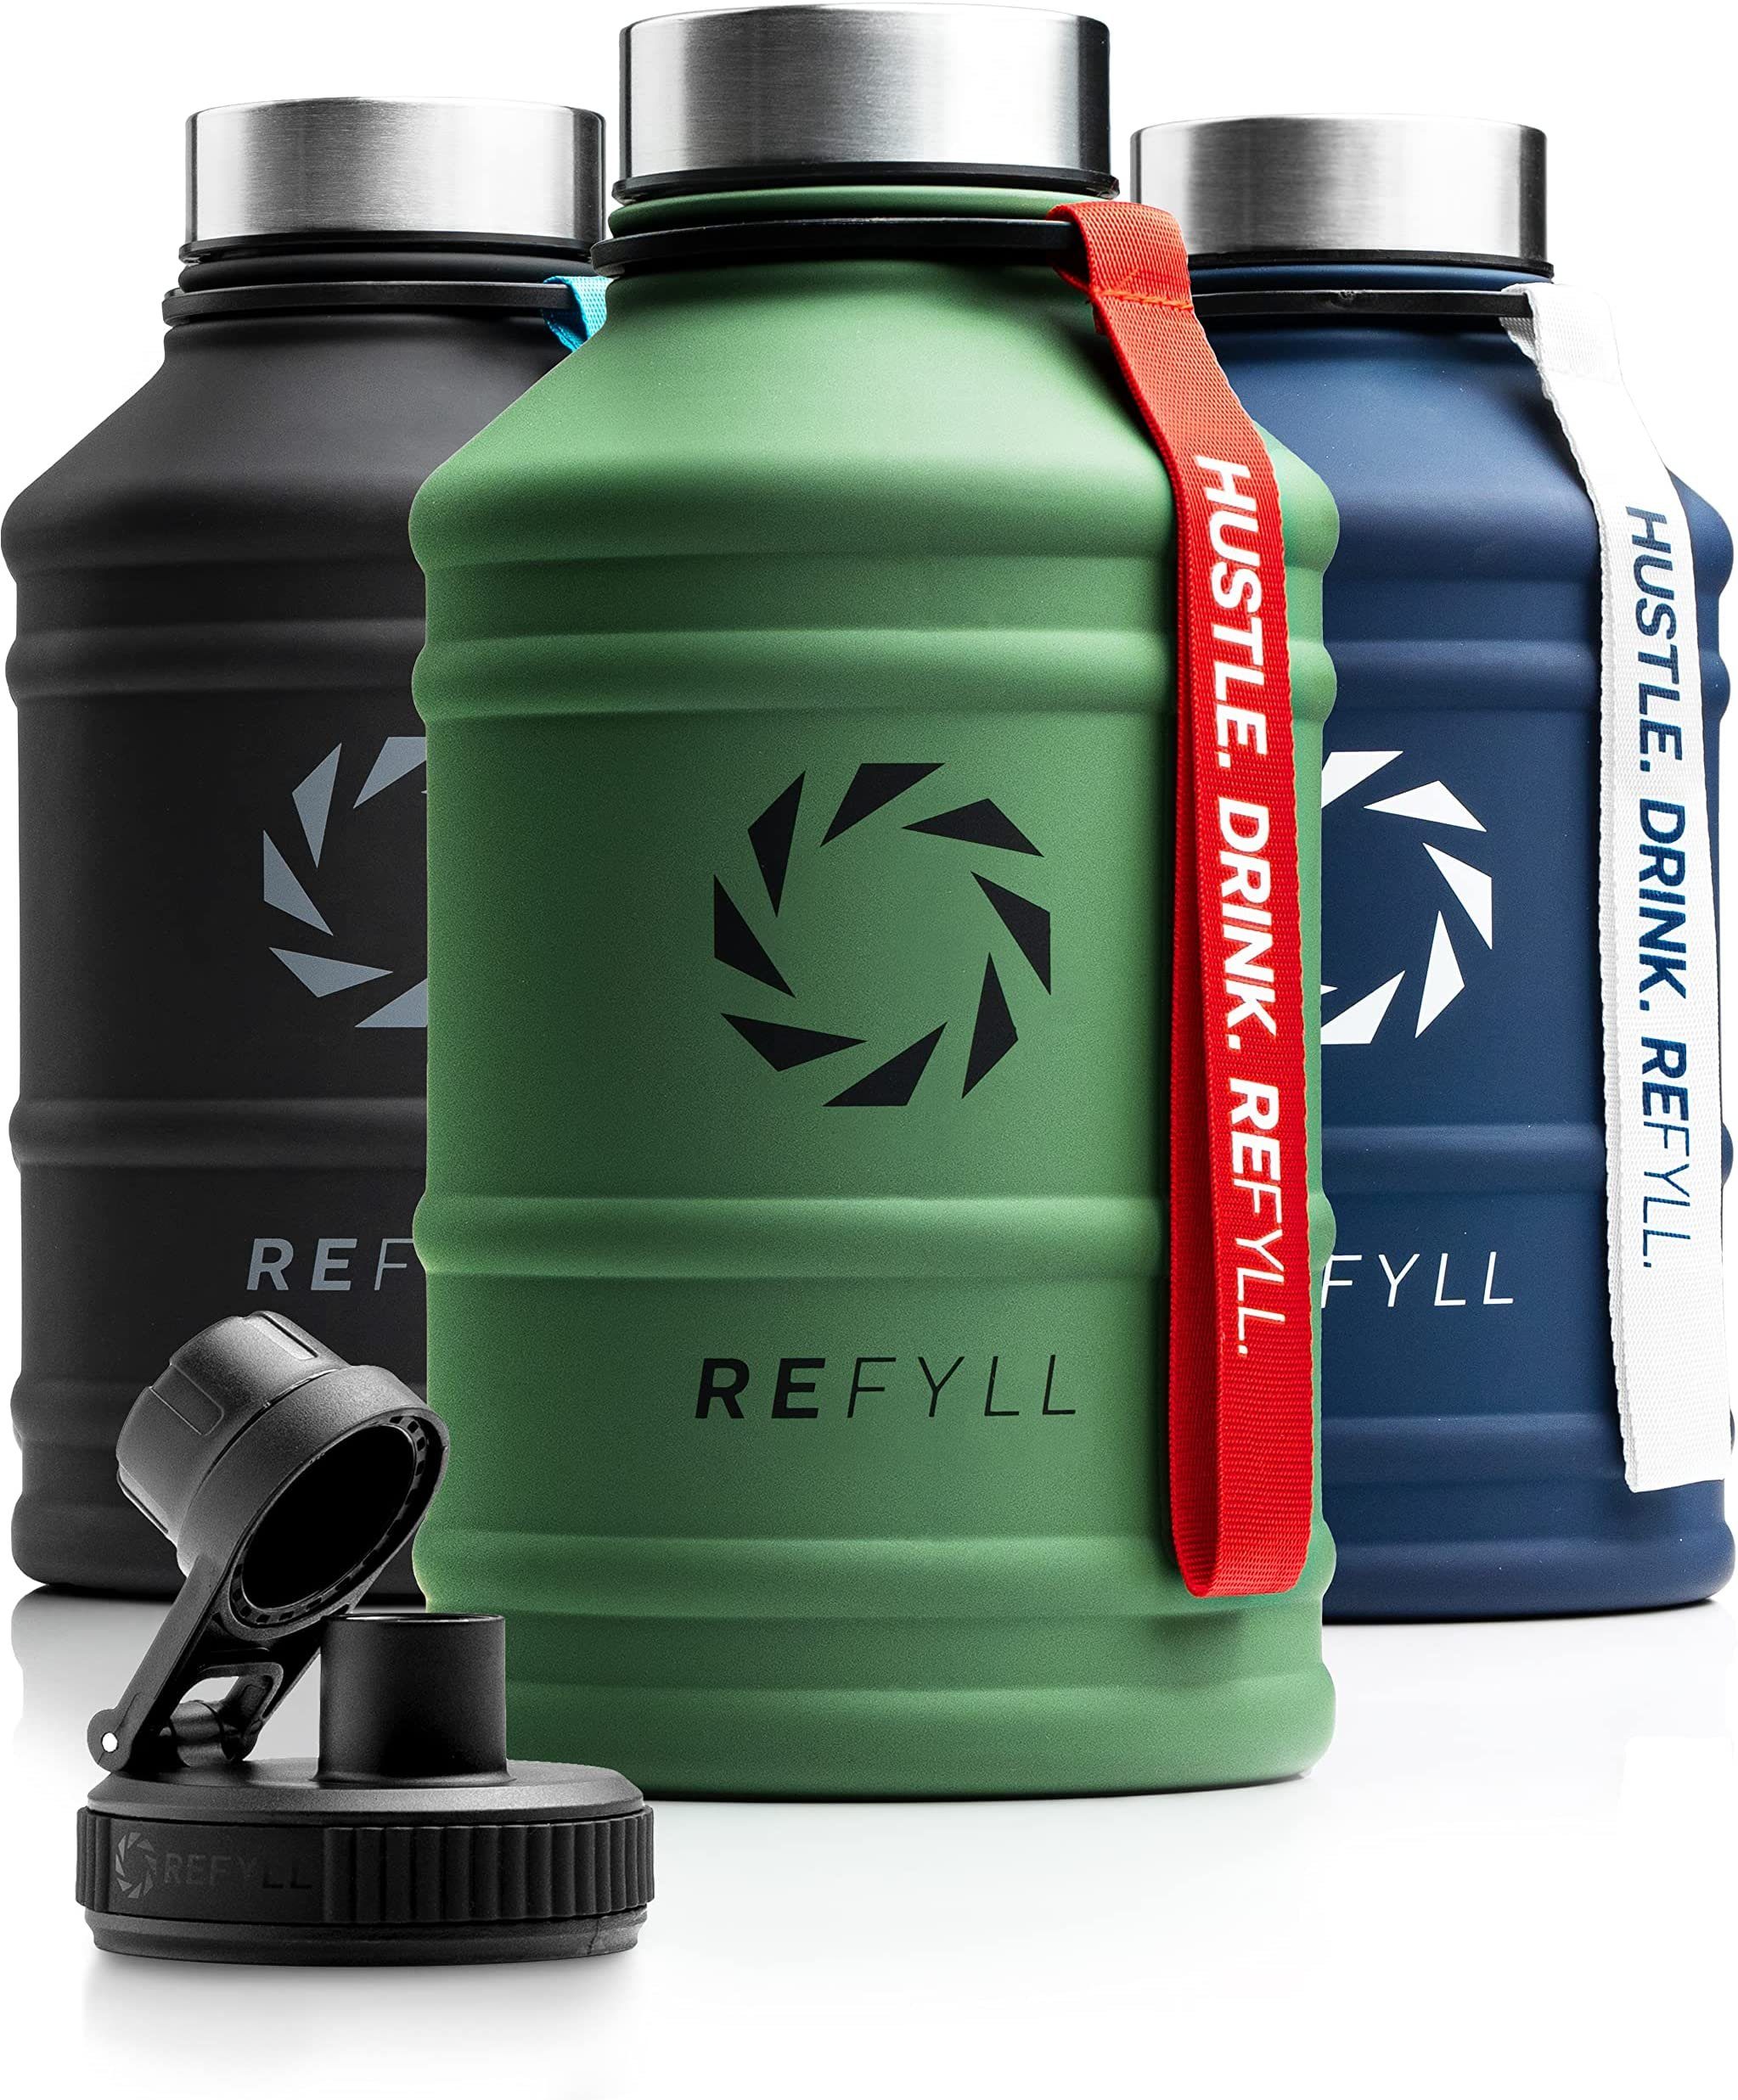 REFYLL Trinkflasche Edelstahl Trinkflasche Hero 1,3L und 2,2L, Auslaufsicher, robust, Fitness Trinkflasche für Sport, Gym, Water Jug auslaufsicher Army Green 1,3 L